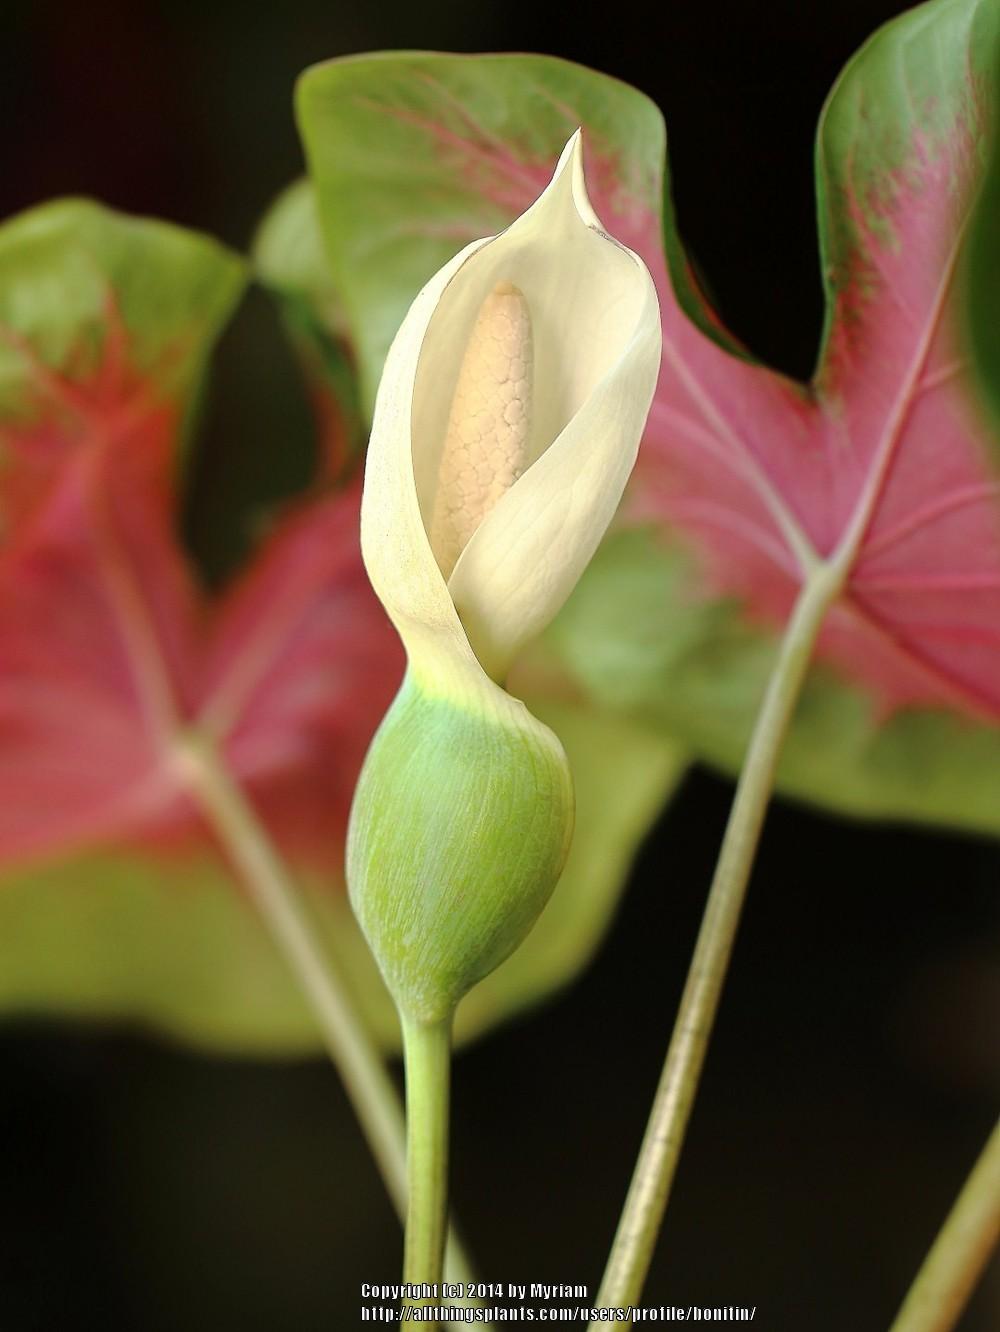 Photo of Fancy-Leafed Caladium (Caladium bicolor) uploaded by bonitin